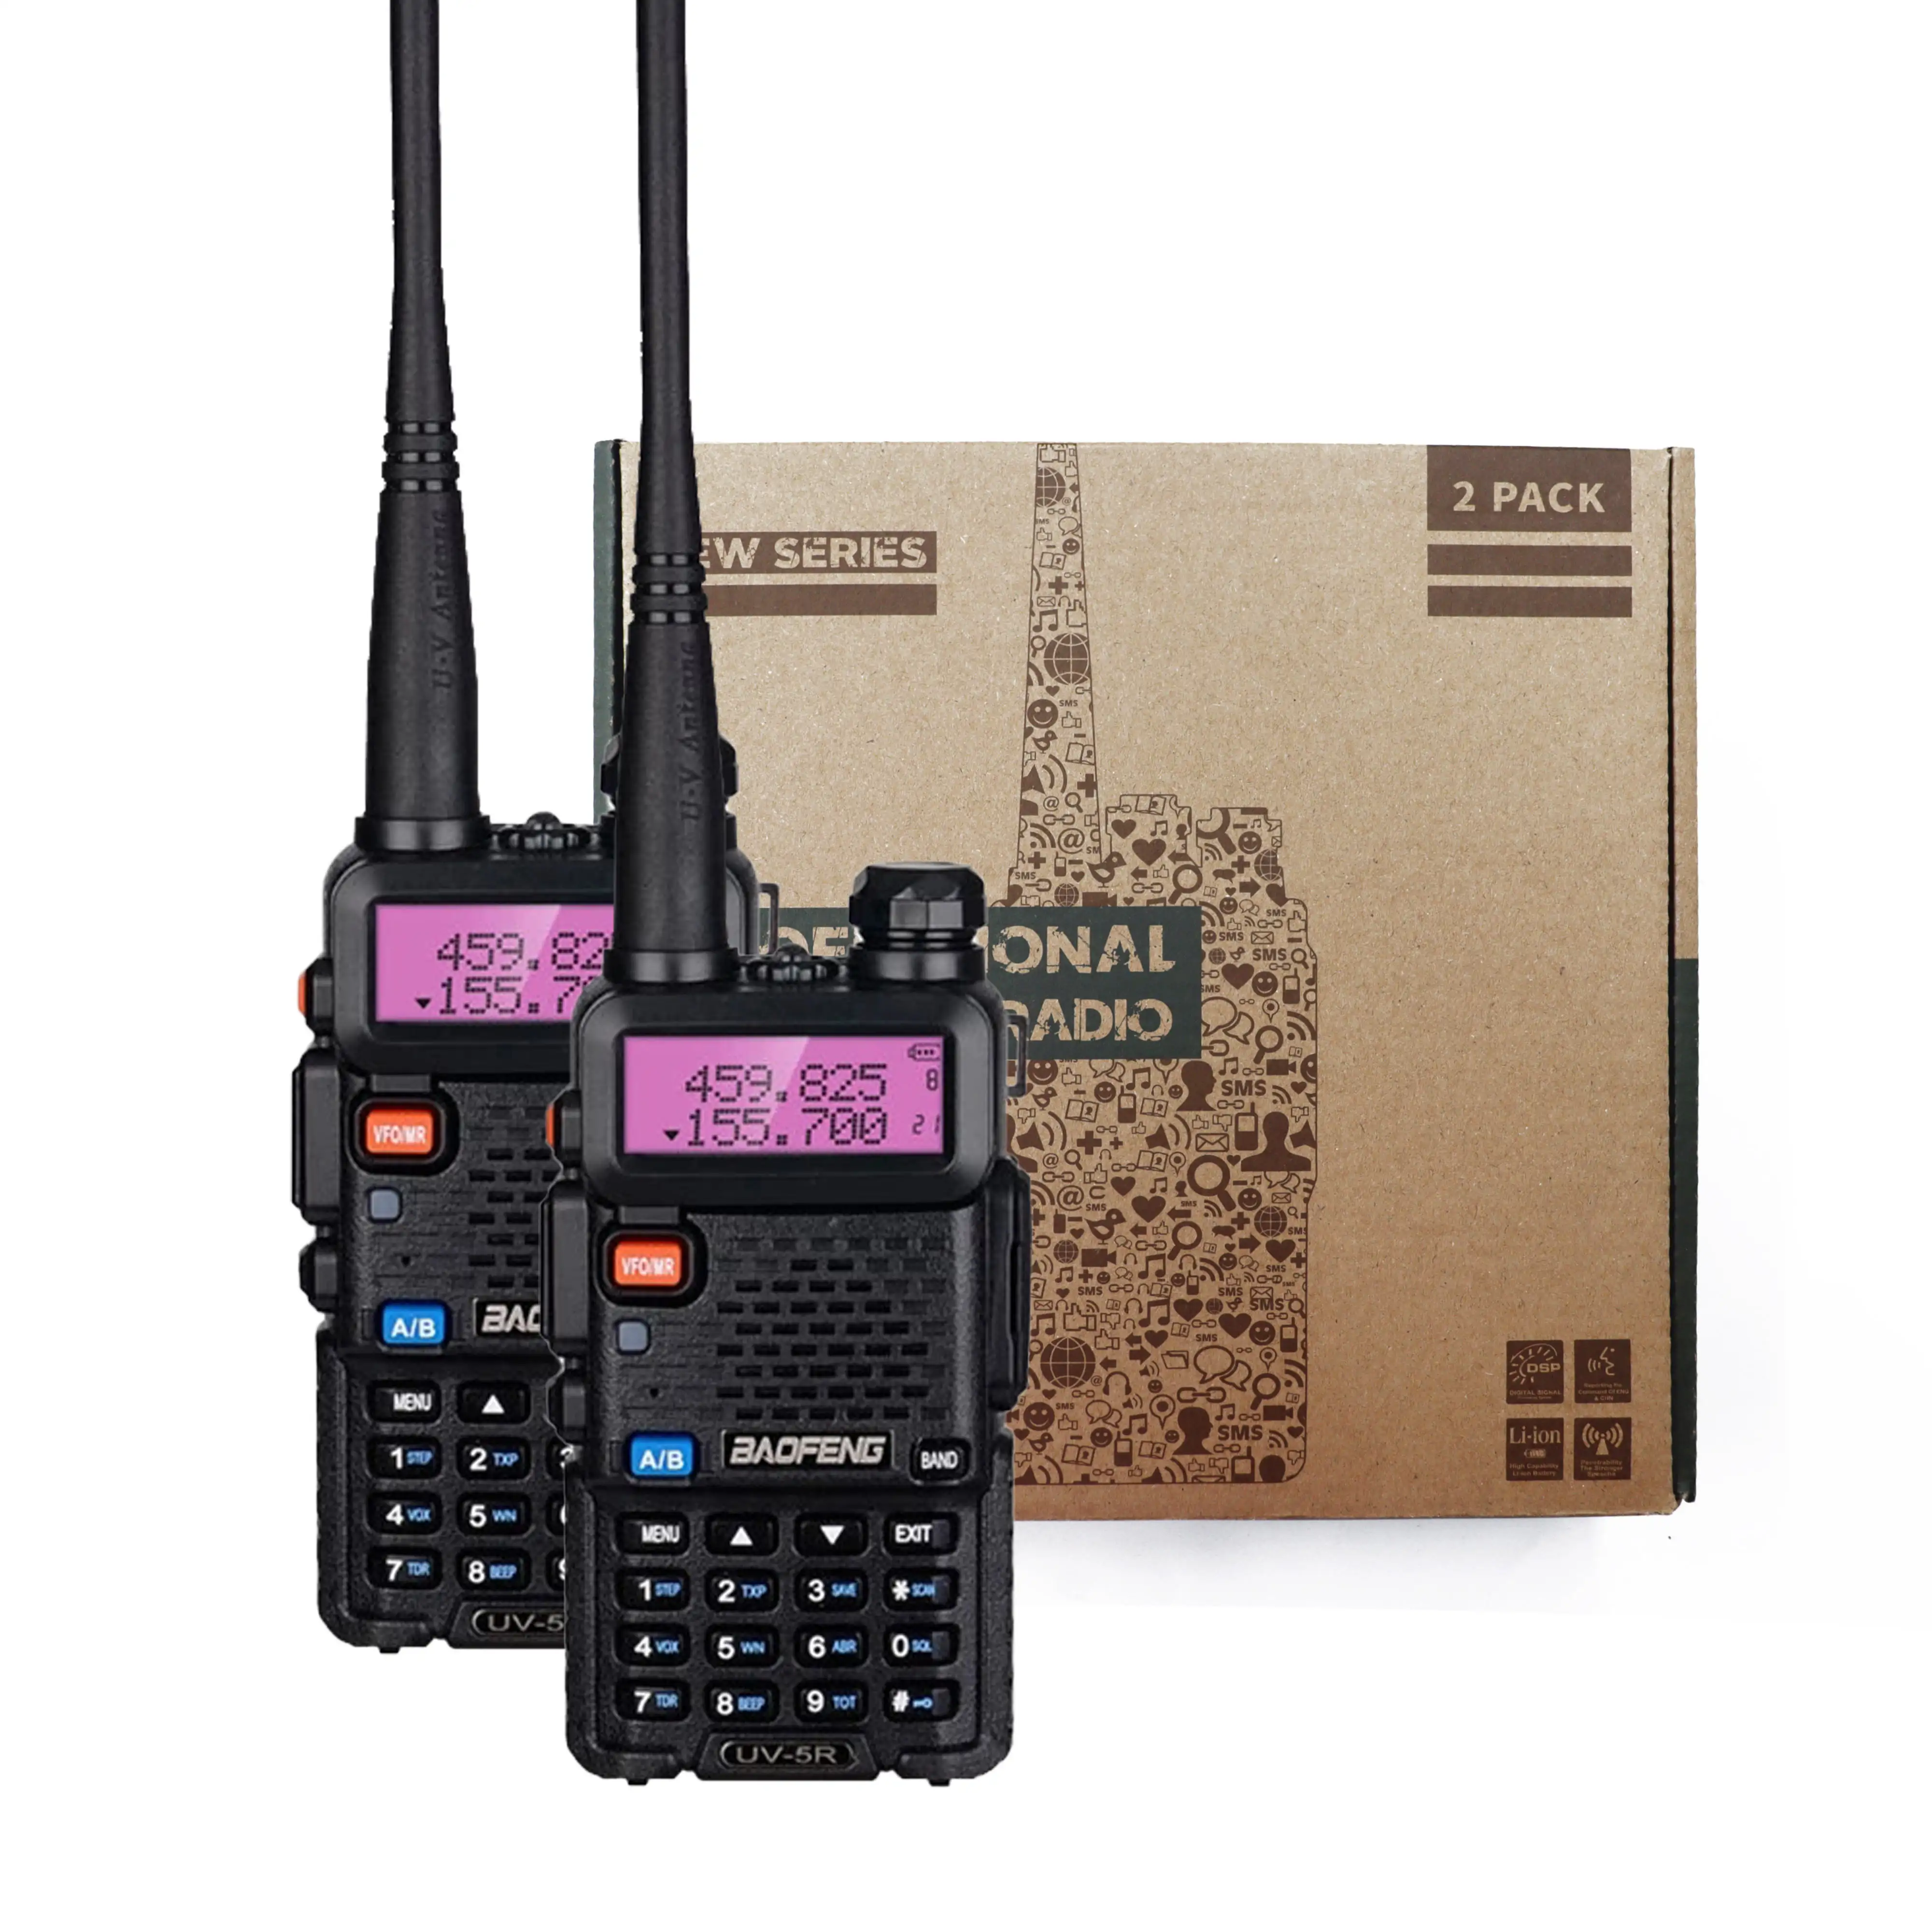 Baofeng Uv-5R Dual Band Waterproof And Dustproof Ham Two Way Radio Baofeng Uv-5r Interphone Handheld Walkie Talkie